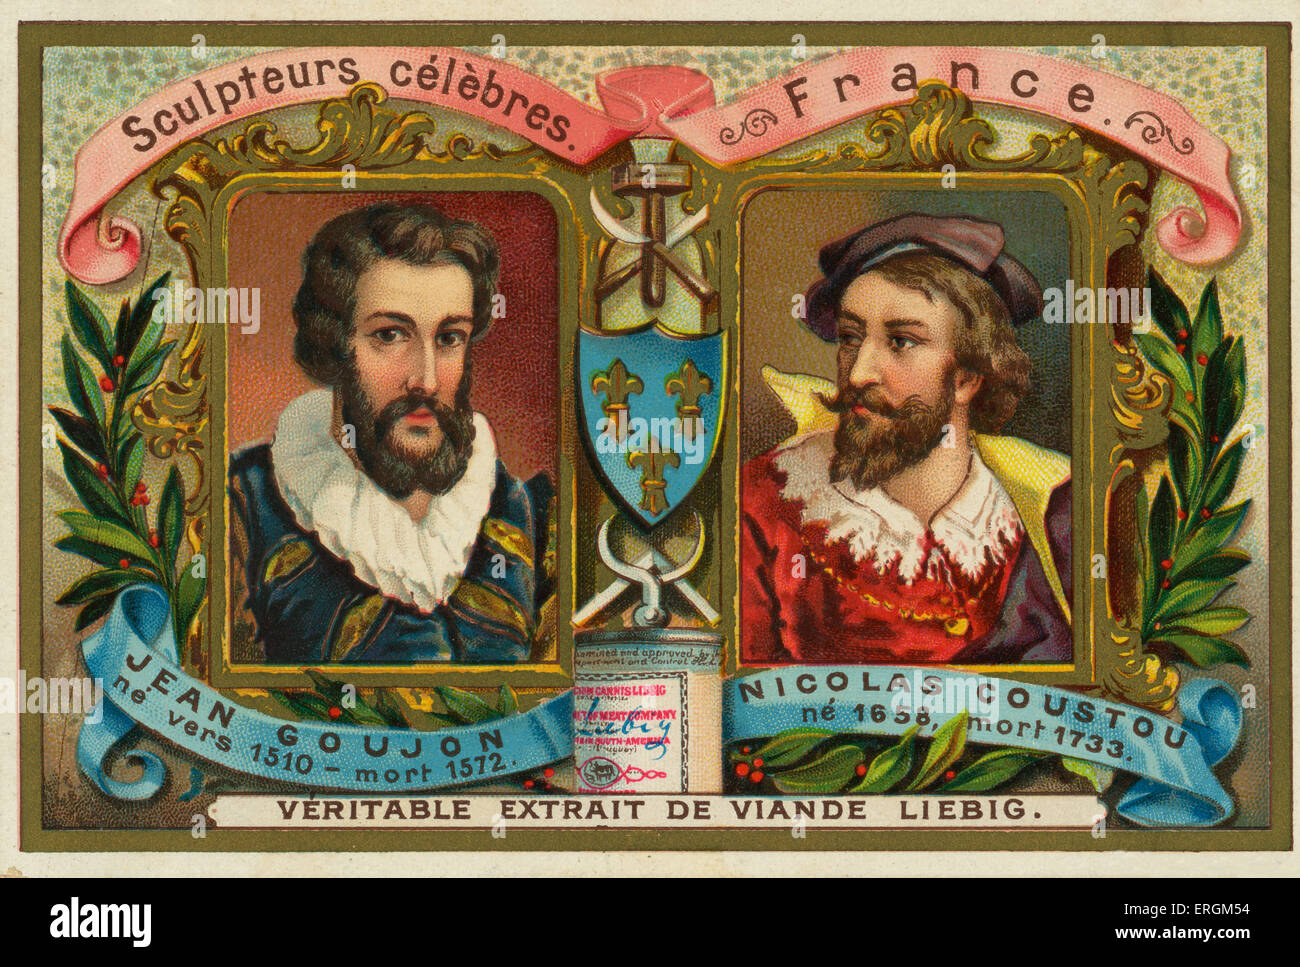 Jean Goujon (1510-1572) et Nicolas Coustou (1658- 1733) célèbres sculpteurs français. Carte Liebig, célèbres sculpteurs, 1897. Banque D'Images